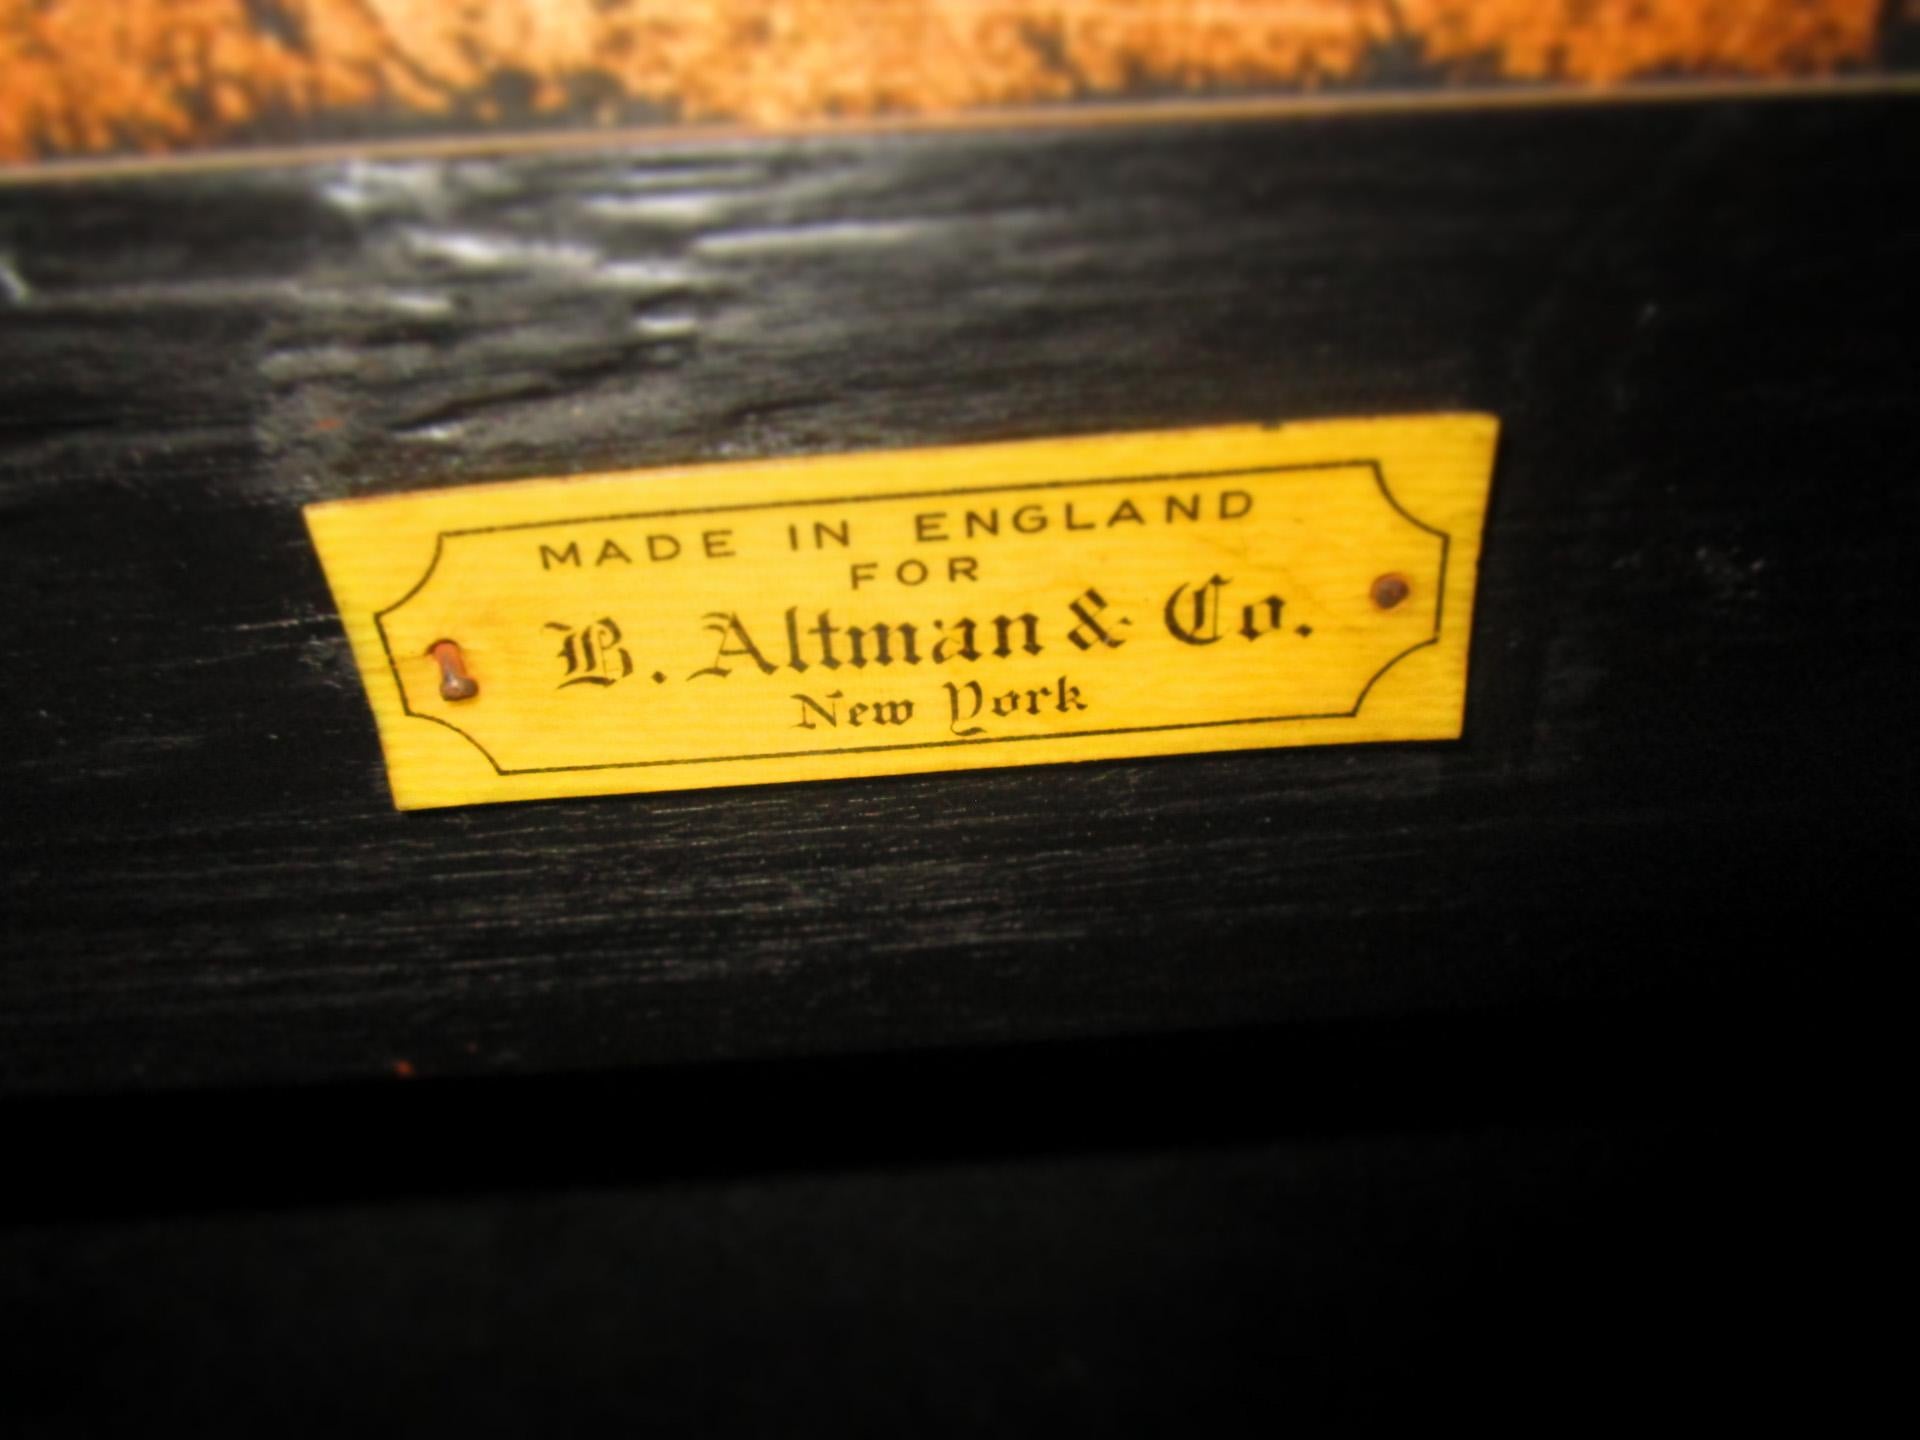 Anglais Écran 4 panneaux en cuir peint à la main Orchard Scene (scène de verger) fait pour I. B. Altman NY